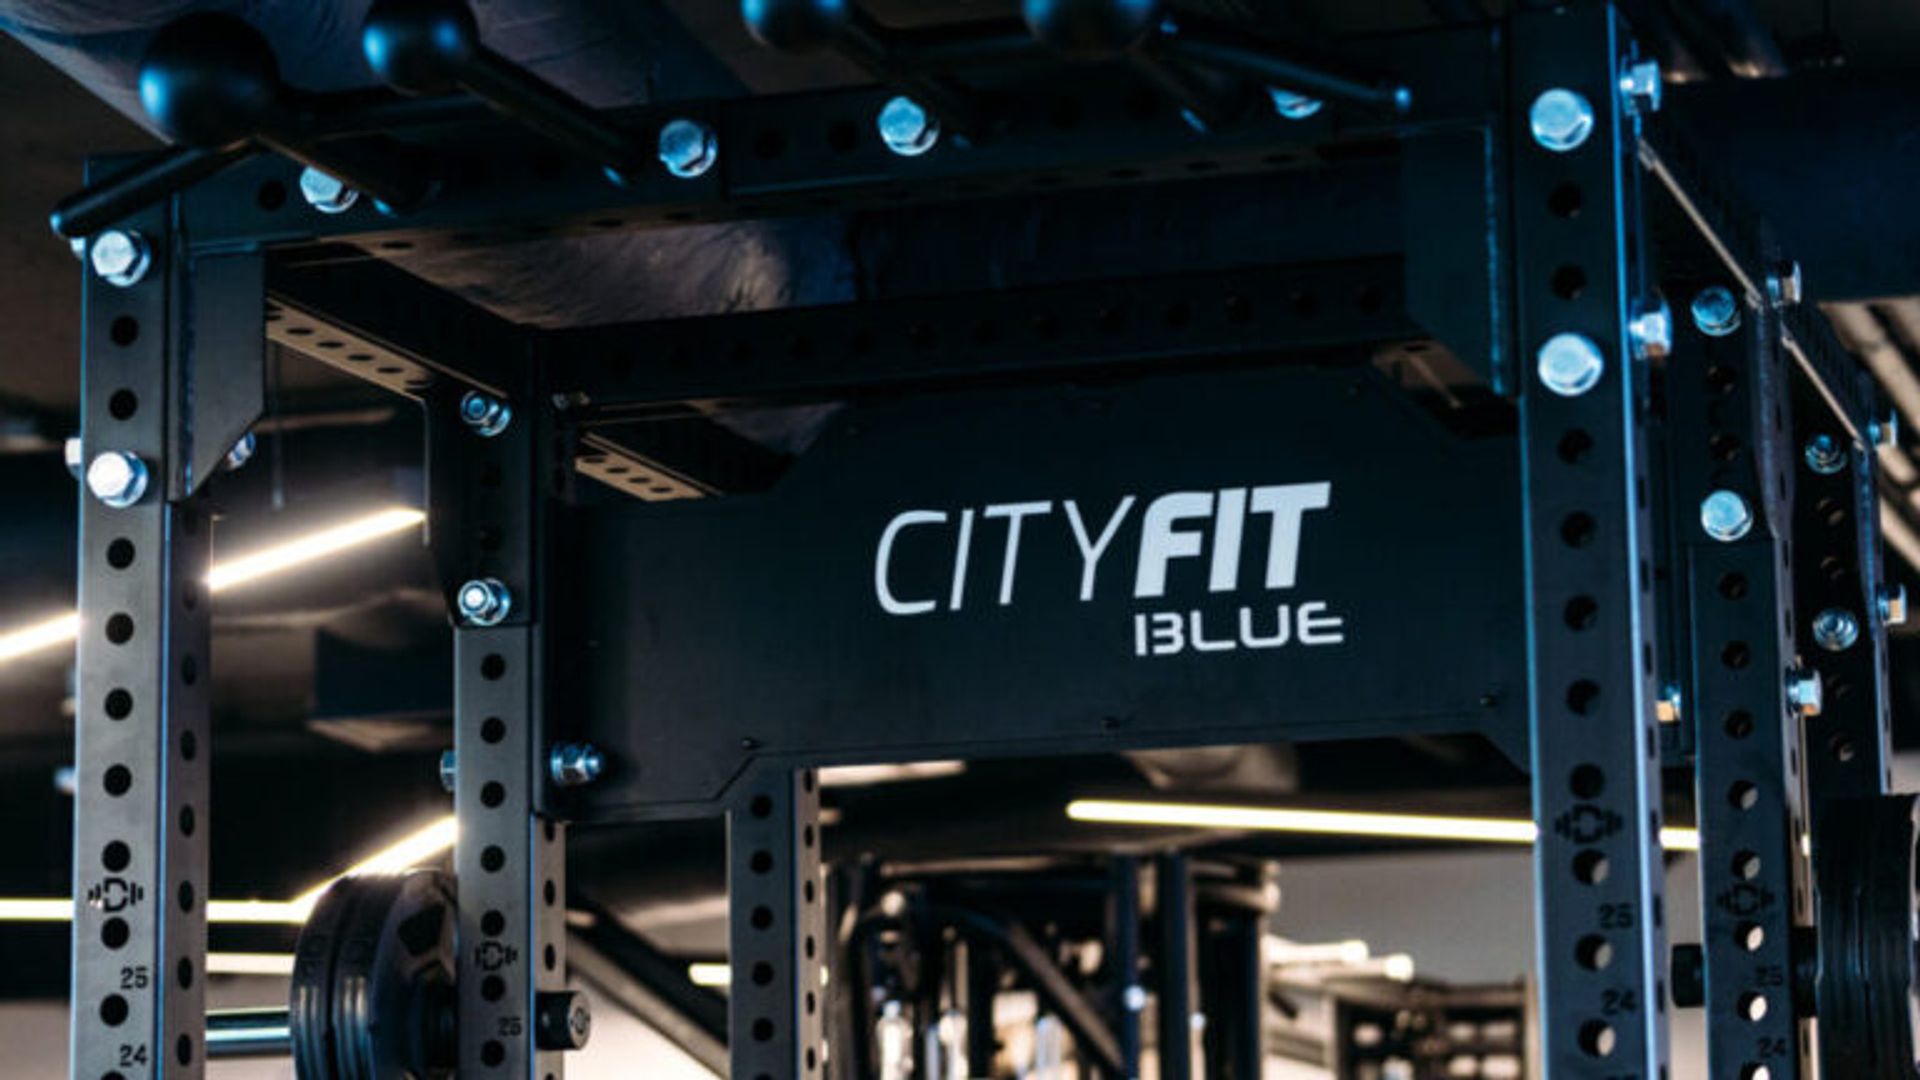 CityFit otworzył pierwszy klub fitness w Siedlcach. Będzie działał w koncepcie Blue